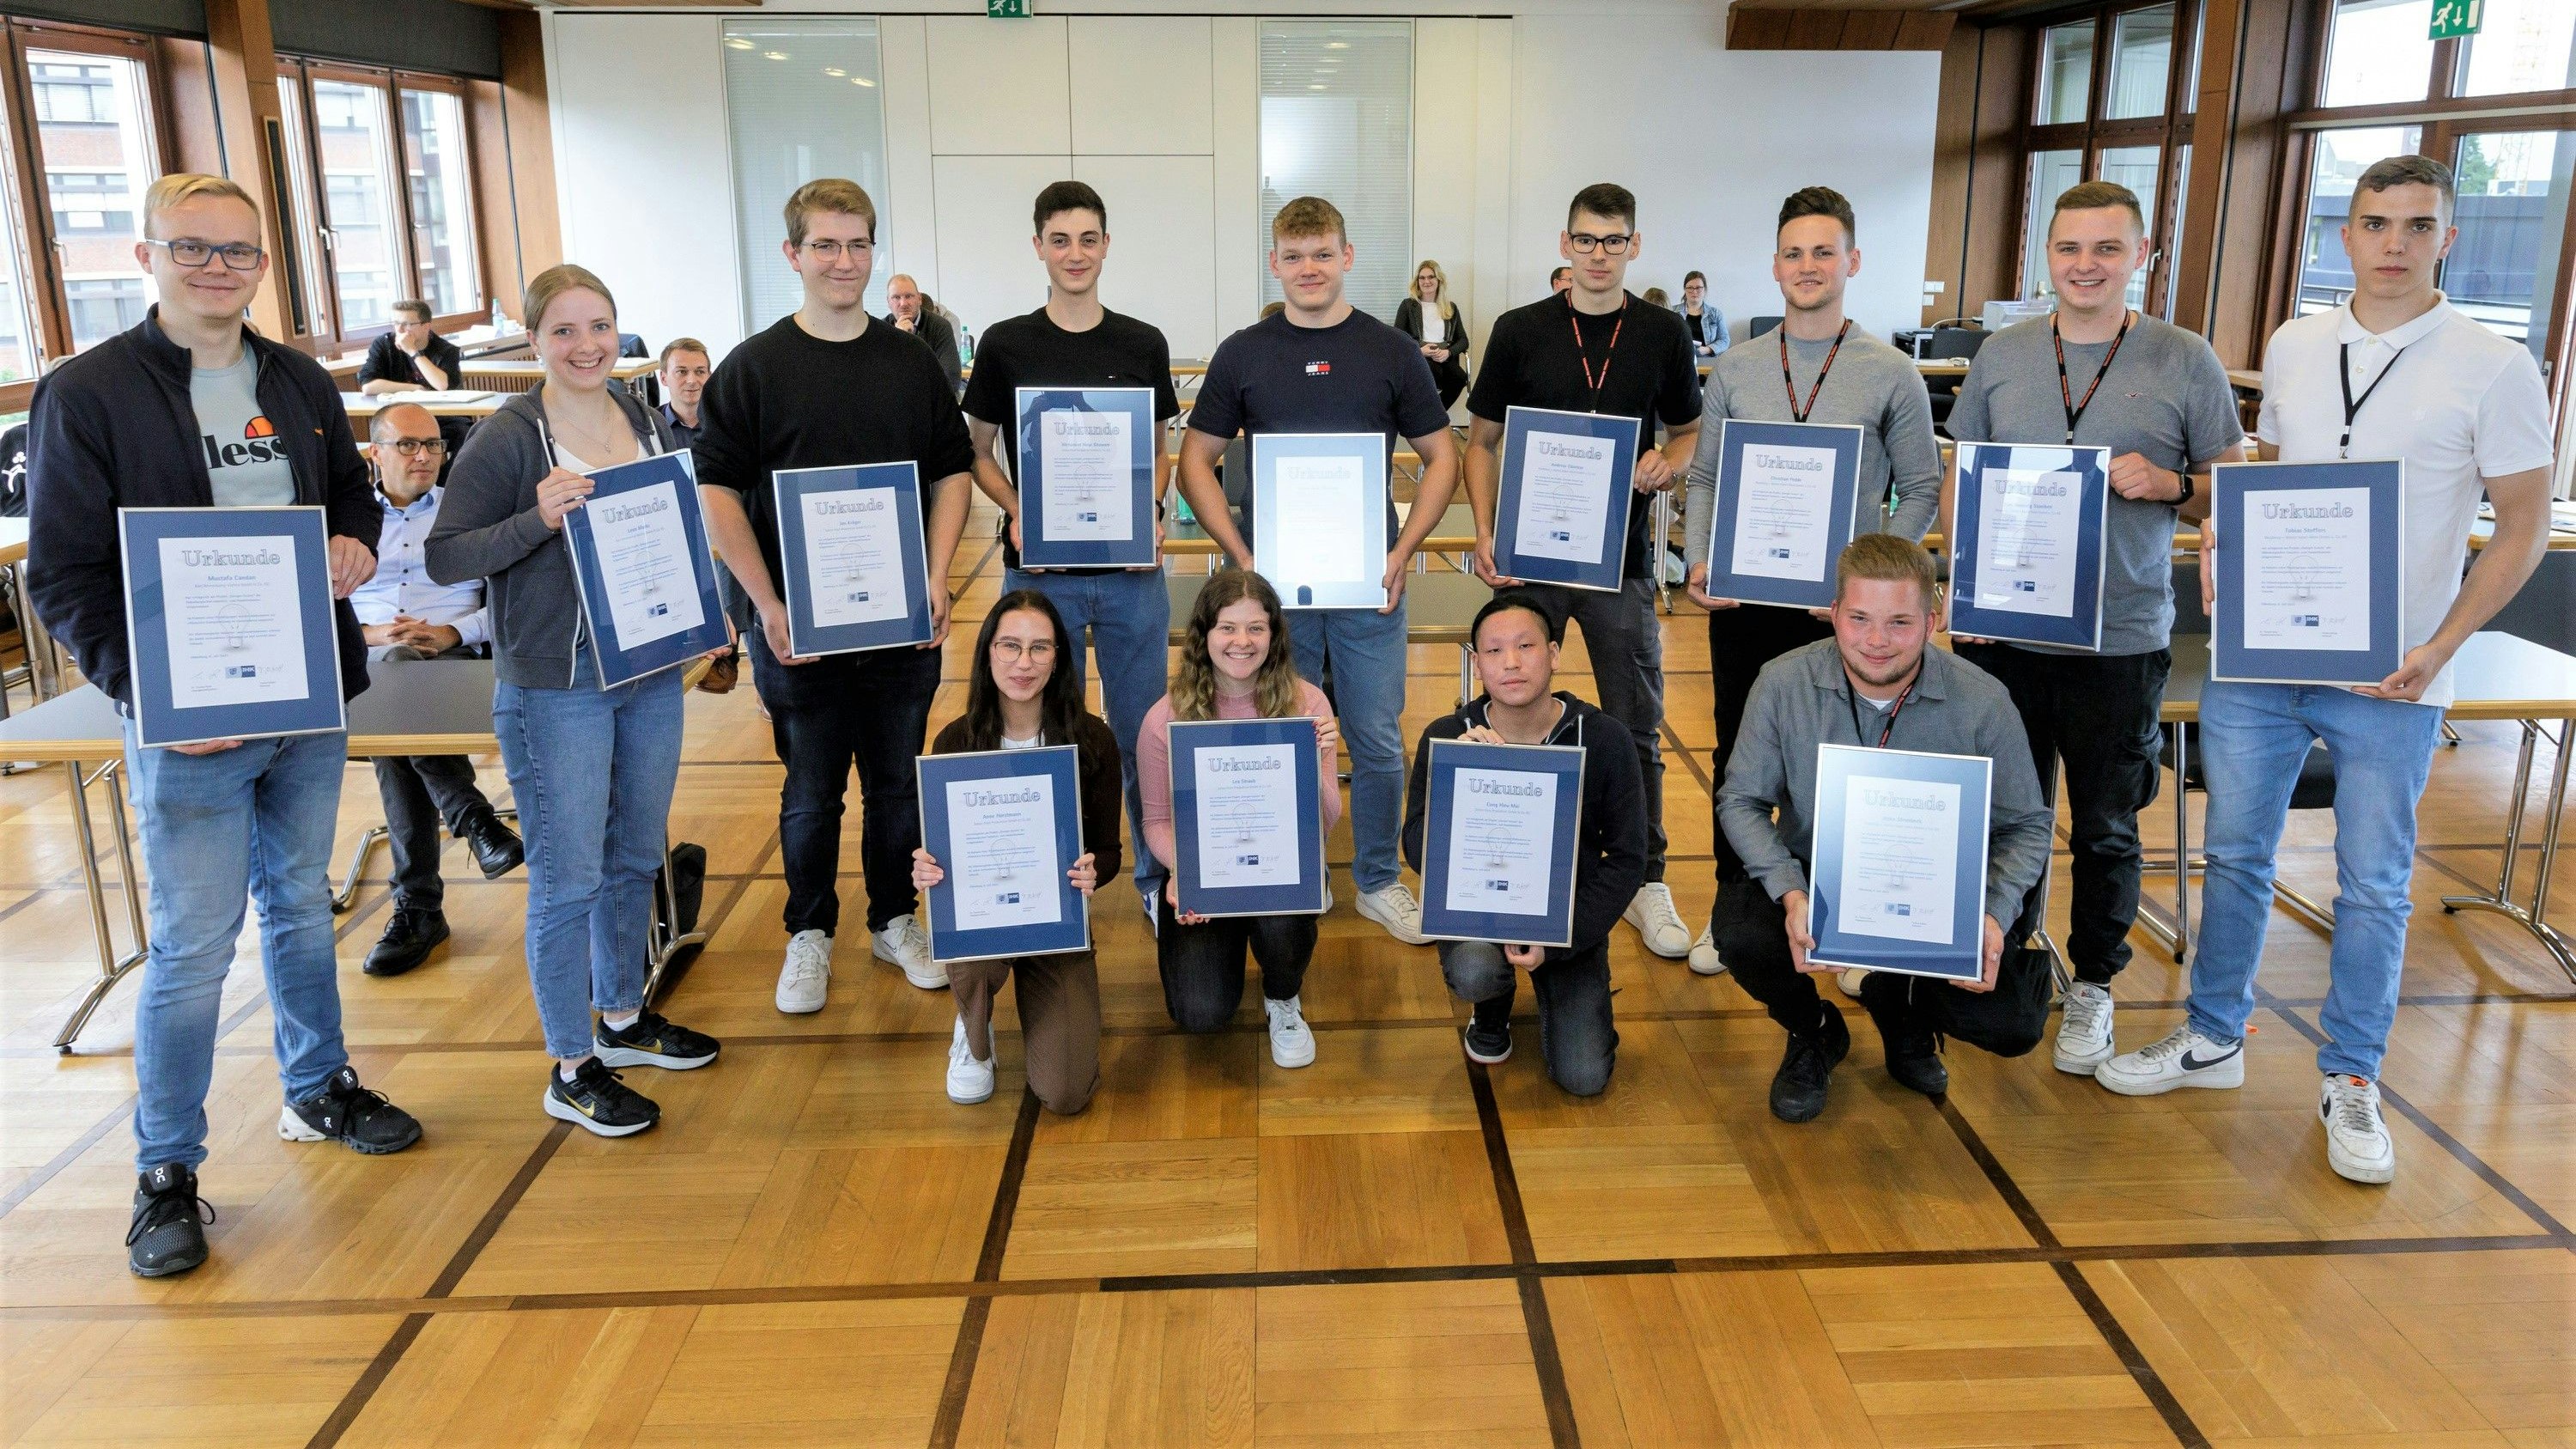 Die ersten drei Plätze im diesjährigen Wettbewerb "Energie-Scouts" der IHK Oldenburg gingen an Auszubildende von Firmen im Oldenburger Münsterland. Foto: Burmann